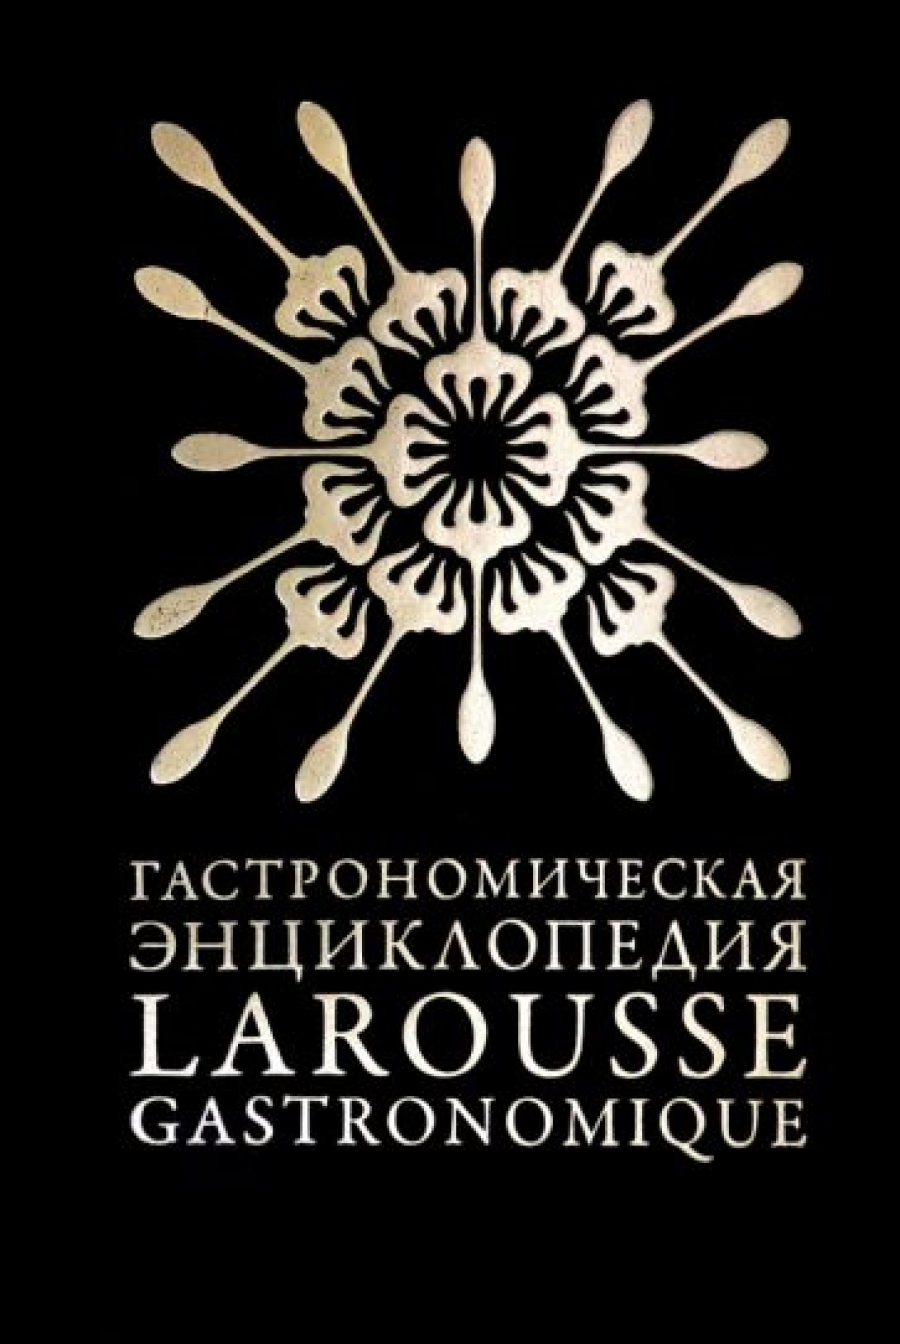 Гастрономическая энциклопедия Ларусс. Том 4 (Larousse Gastronomique) В 12 Т. Т. 6